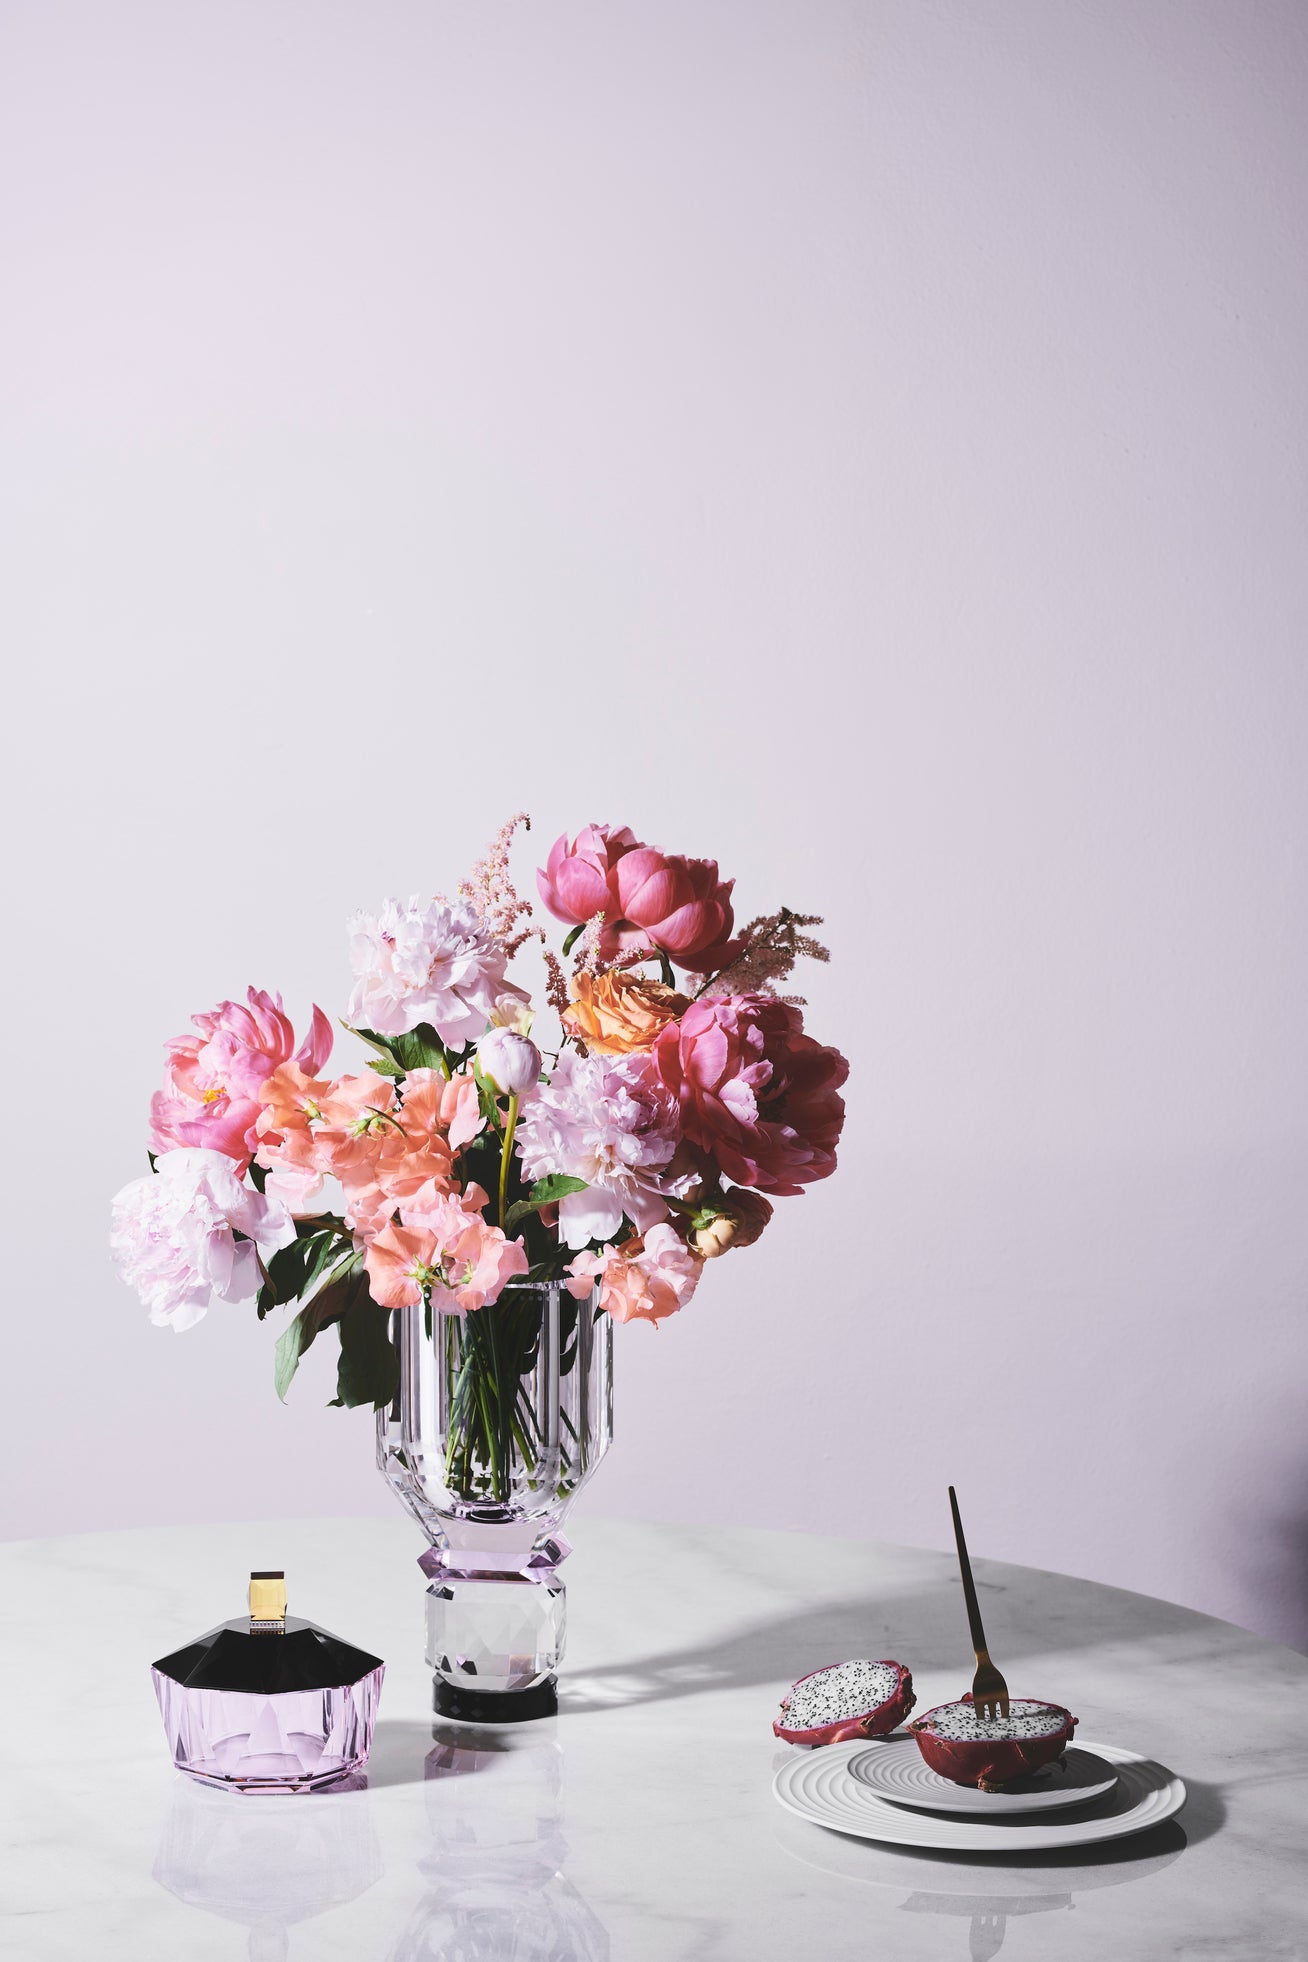 Vase i klar, lyserød og sort krystal med blomster i, stående ved siden af en bonbonniere i lyserødt krystal på marmorbor med lyserød baggrund.